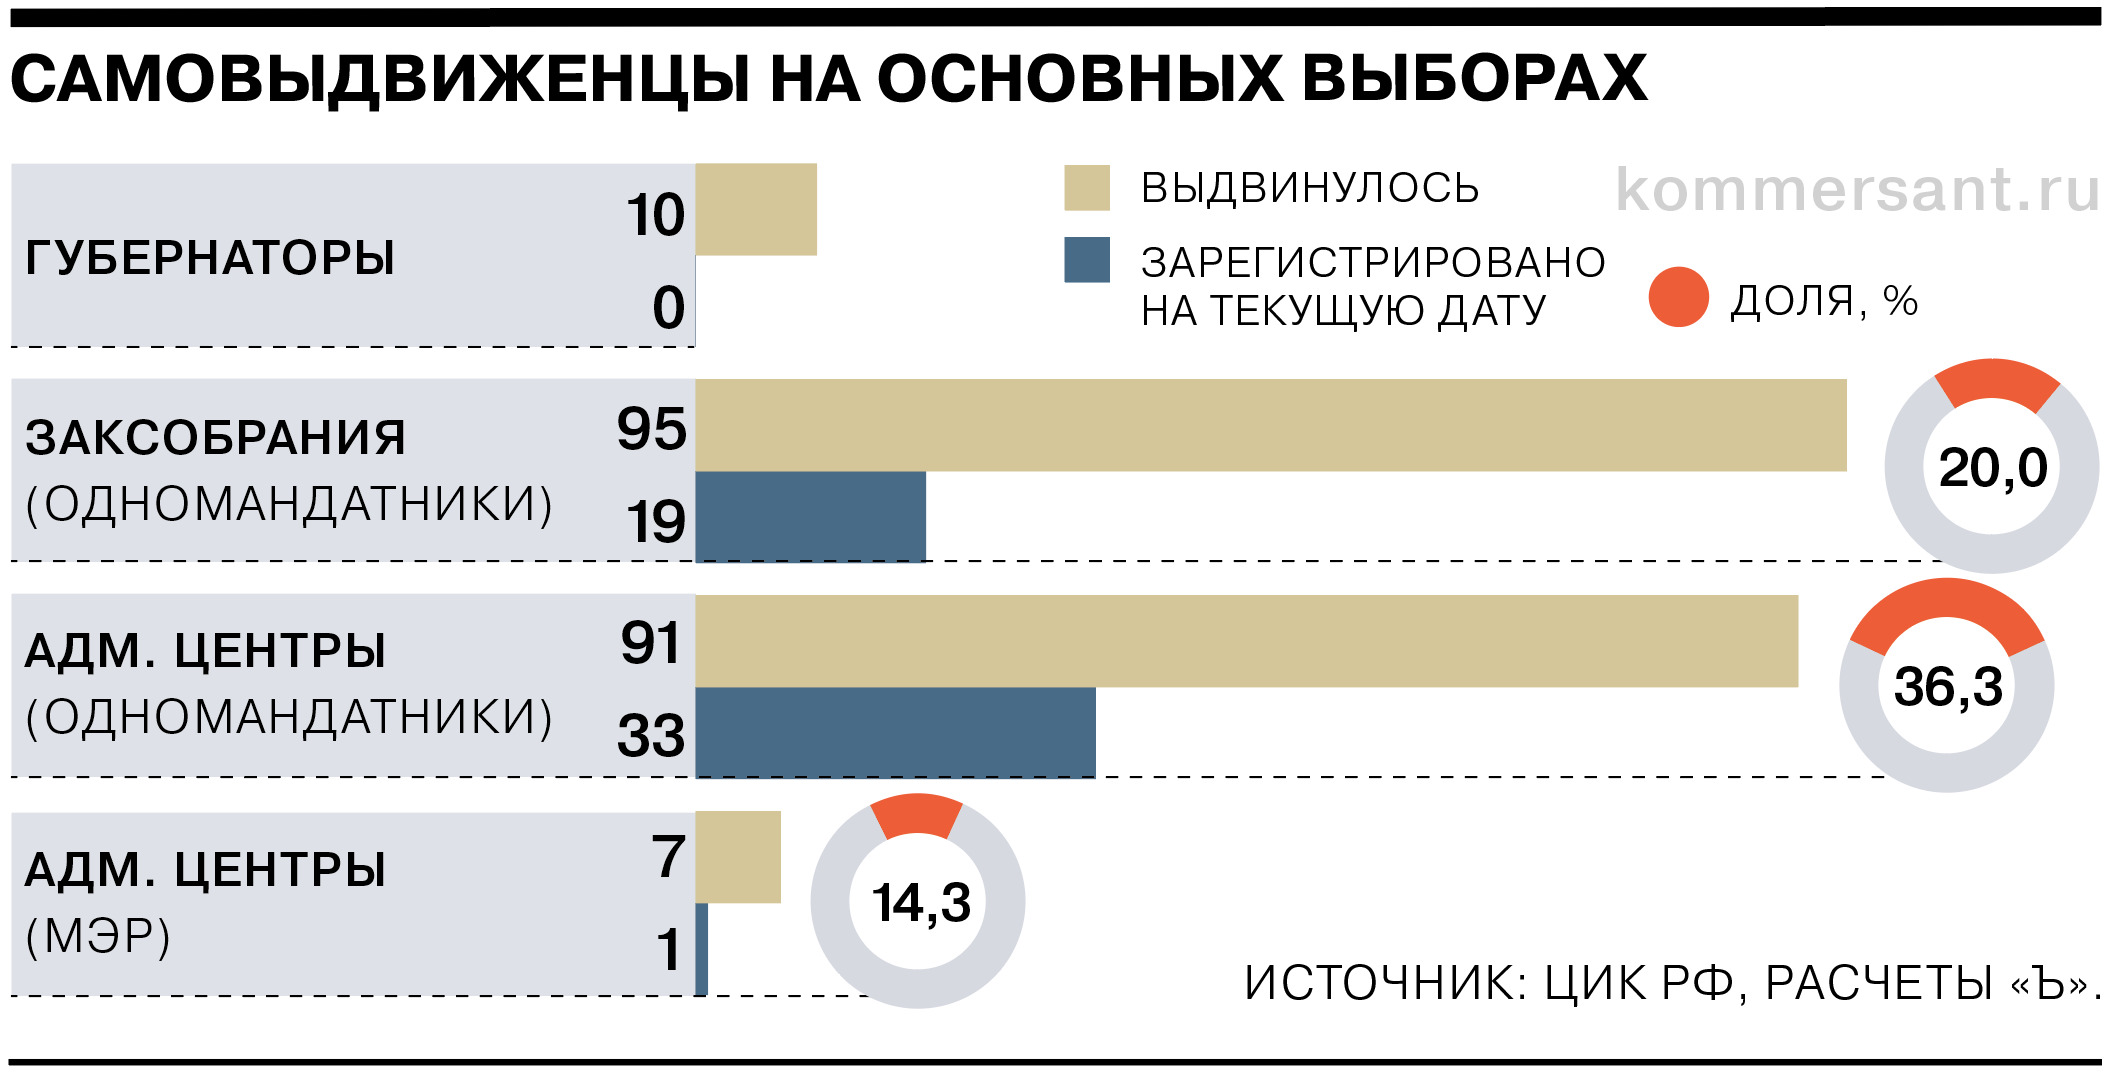 Явки на выборы президента россии 2018 процент. Голосование 2023 единый день голосования. Рейтинг голосование 2023.